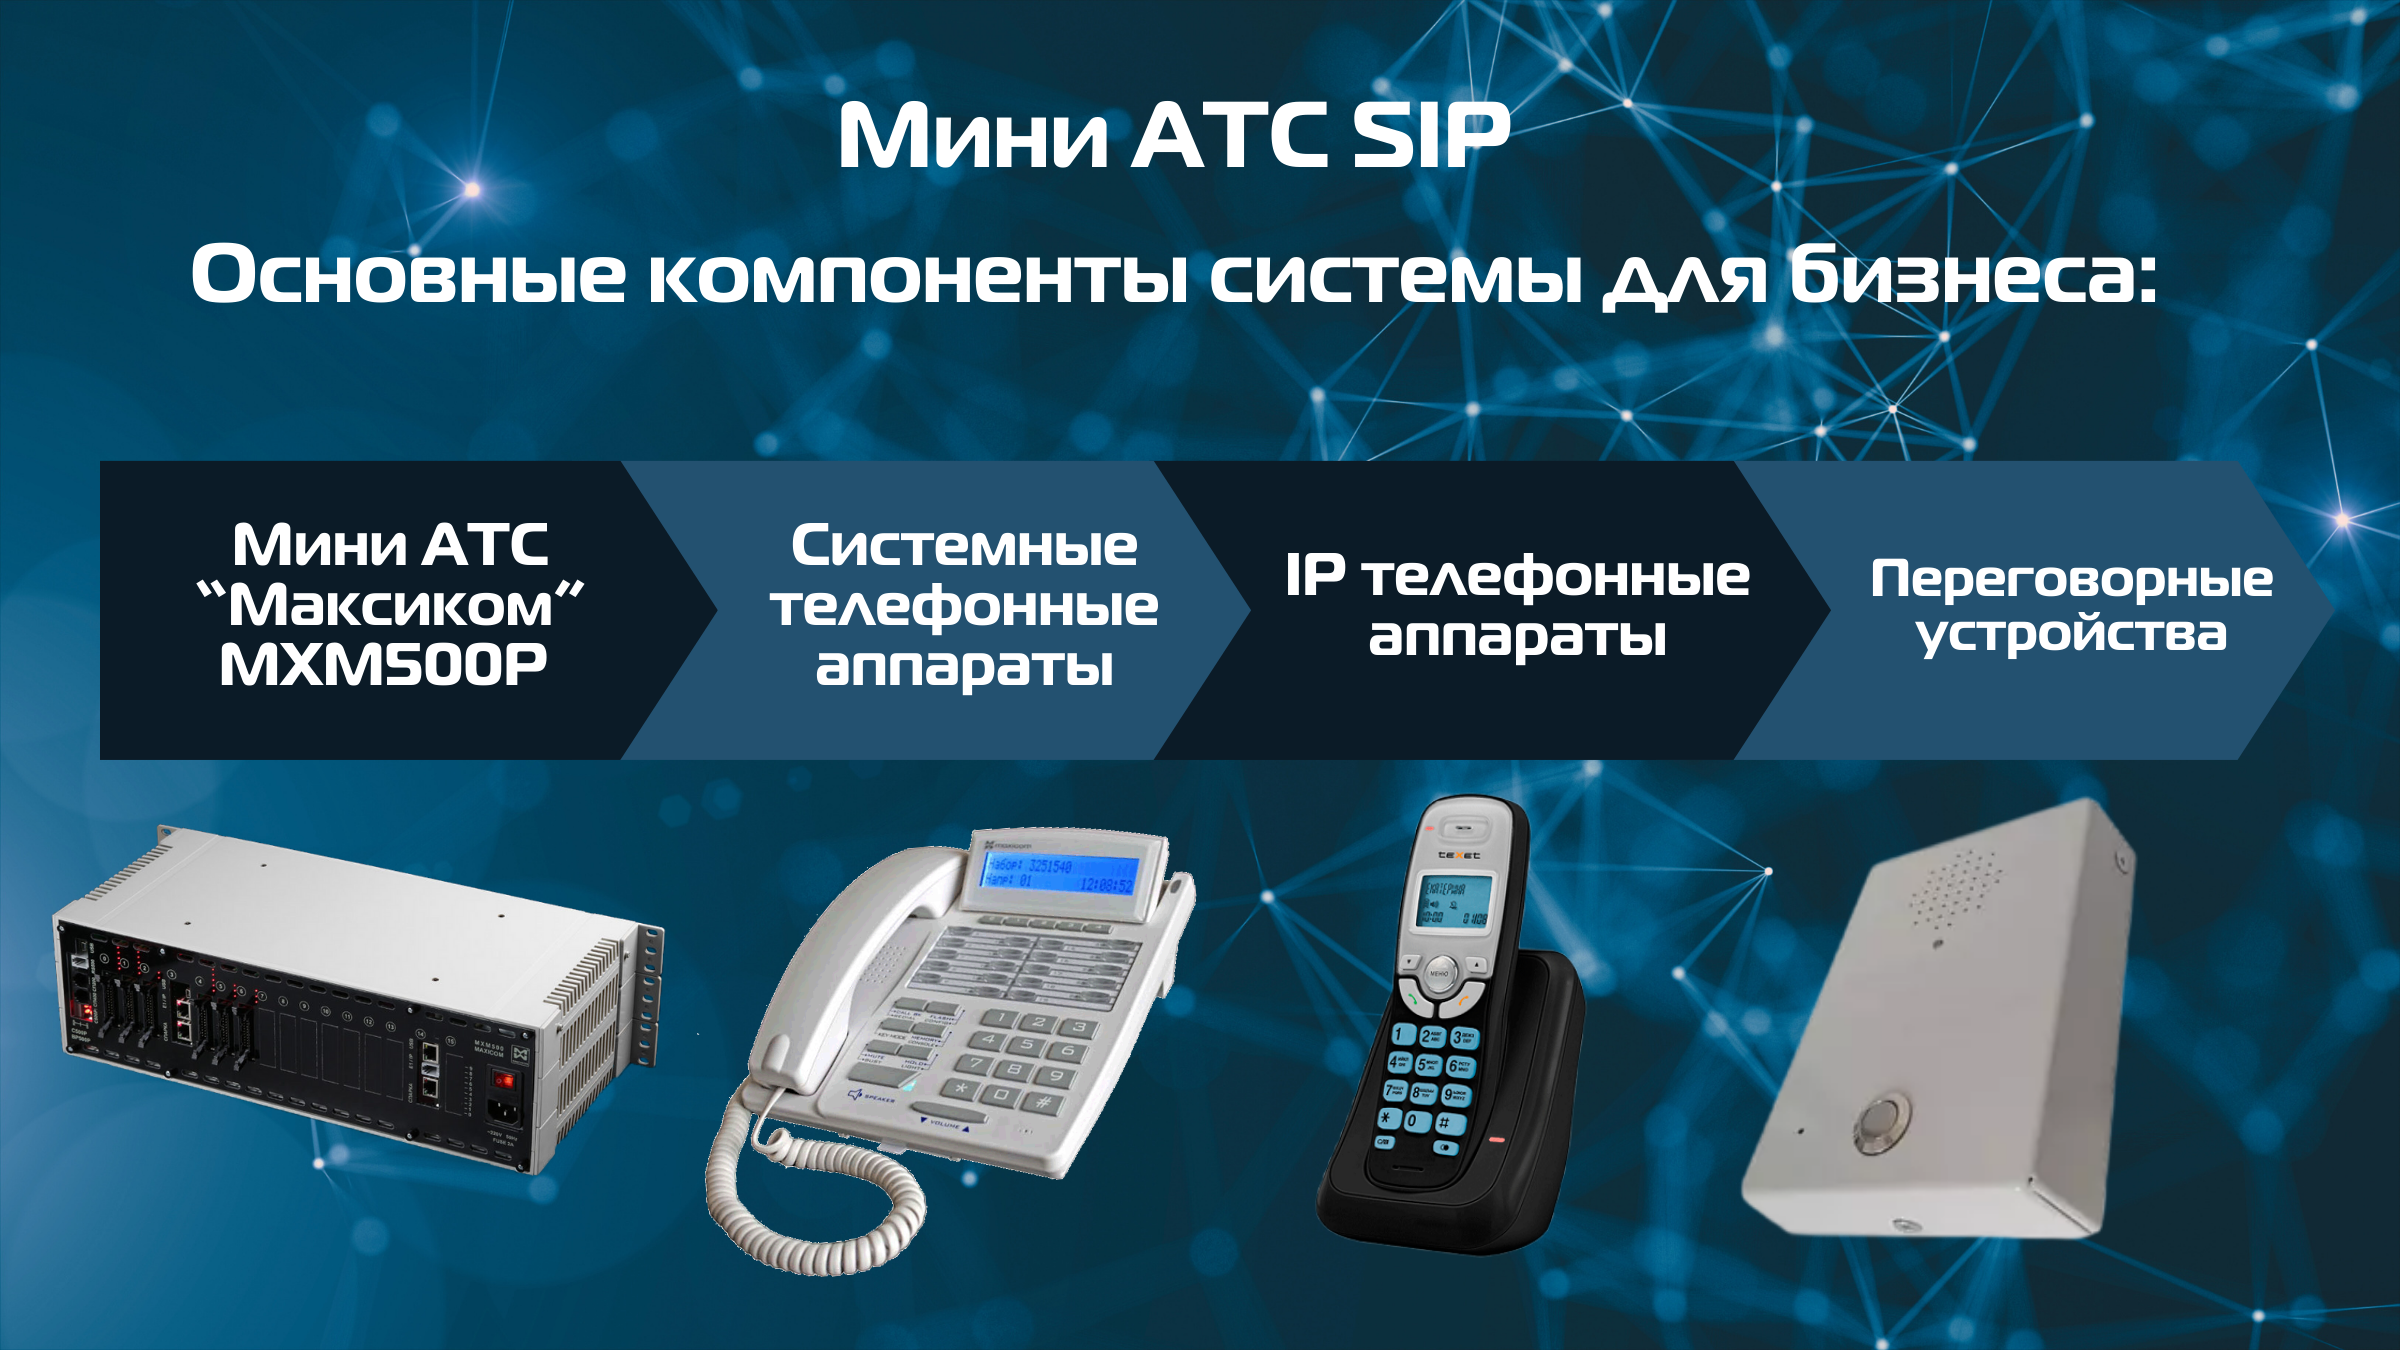 SIP телефония, интегрированная в систему связи на базе аппаратной АТС